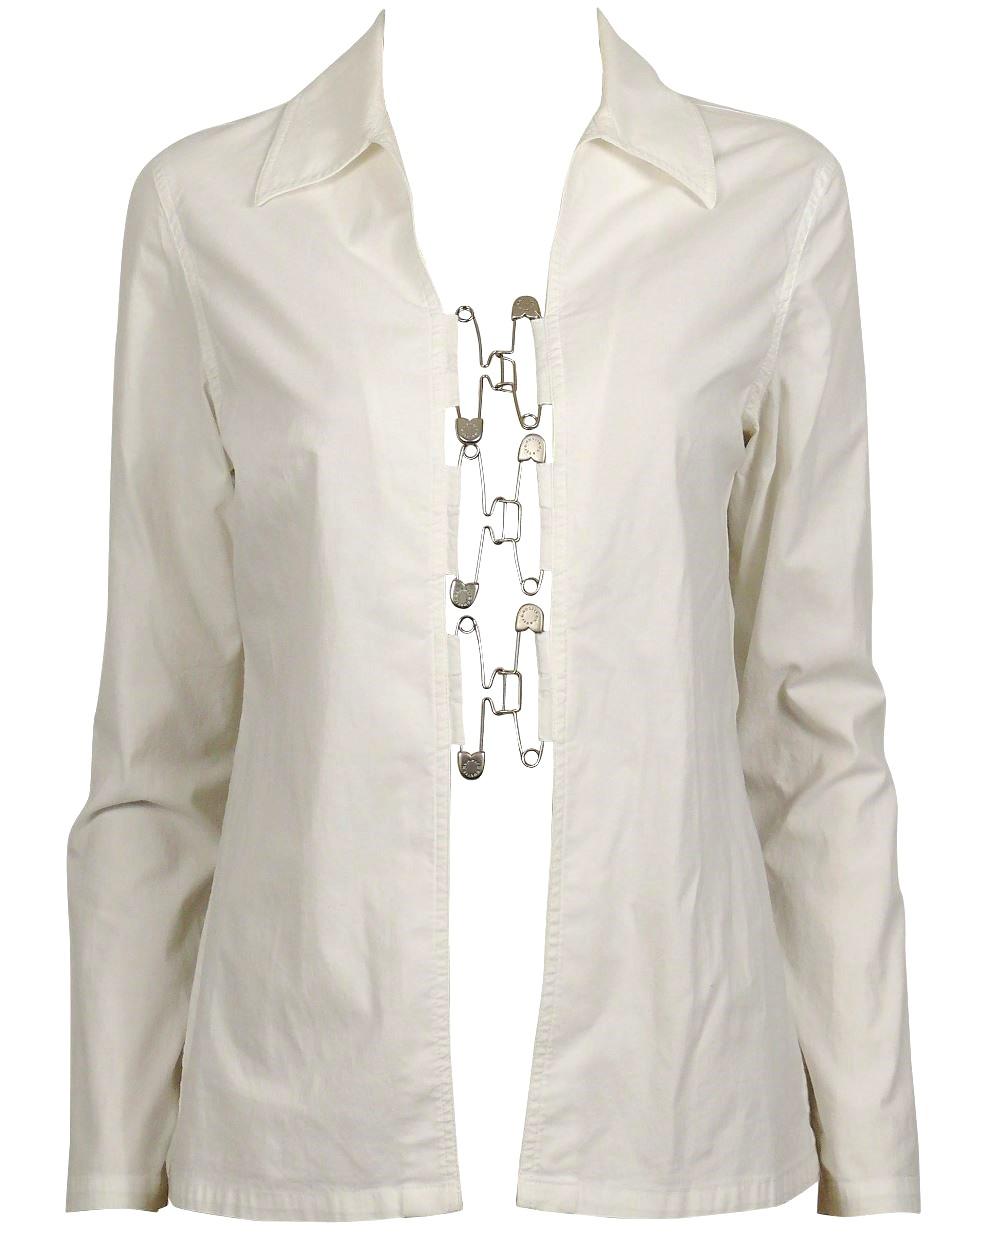 Weißes Vintage-Hemd von JEAN PAUL GAULTIER mit Sicherheitsnadel-Hakenverschlüssen auf der Vorderseite.
Gaultier Jean`s Lasche mit Totenköpfen auf der Rückseite.

Bella Hadid ist in einem Crop-Denim-Top zu sehen, außerhalb der Jean-Paul Gaultier